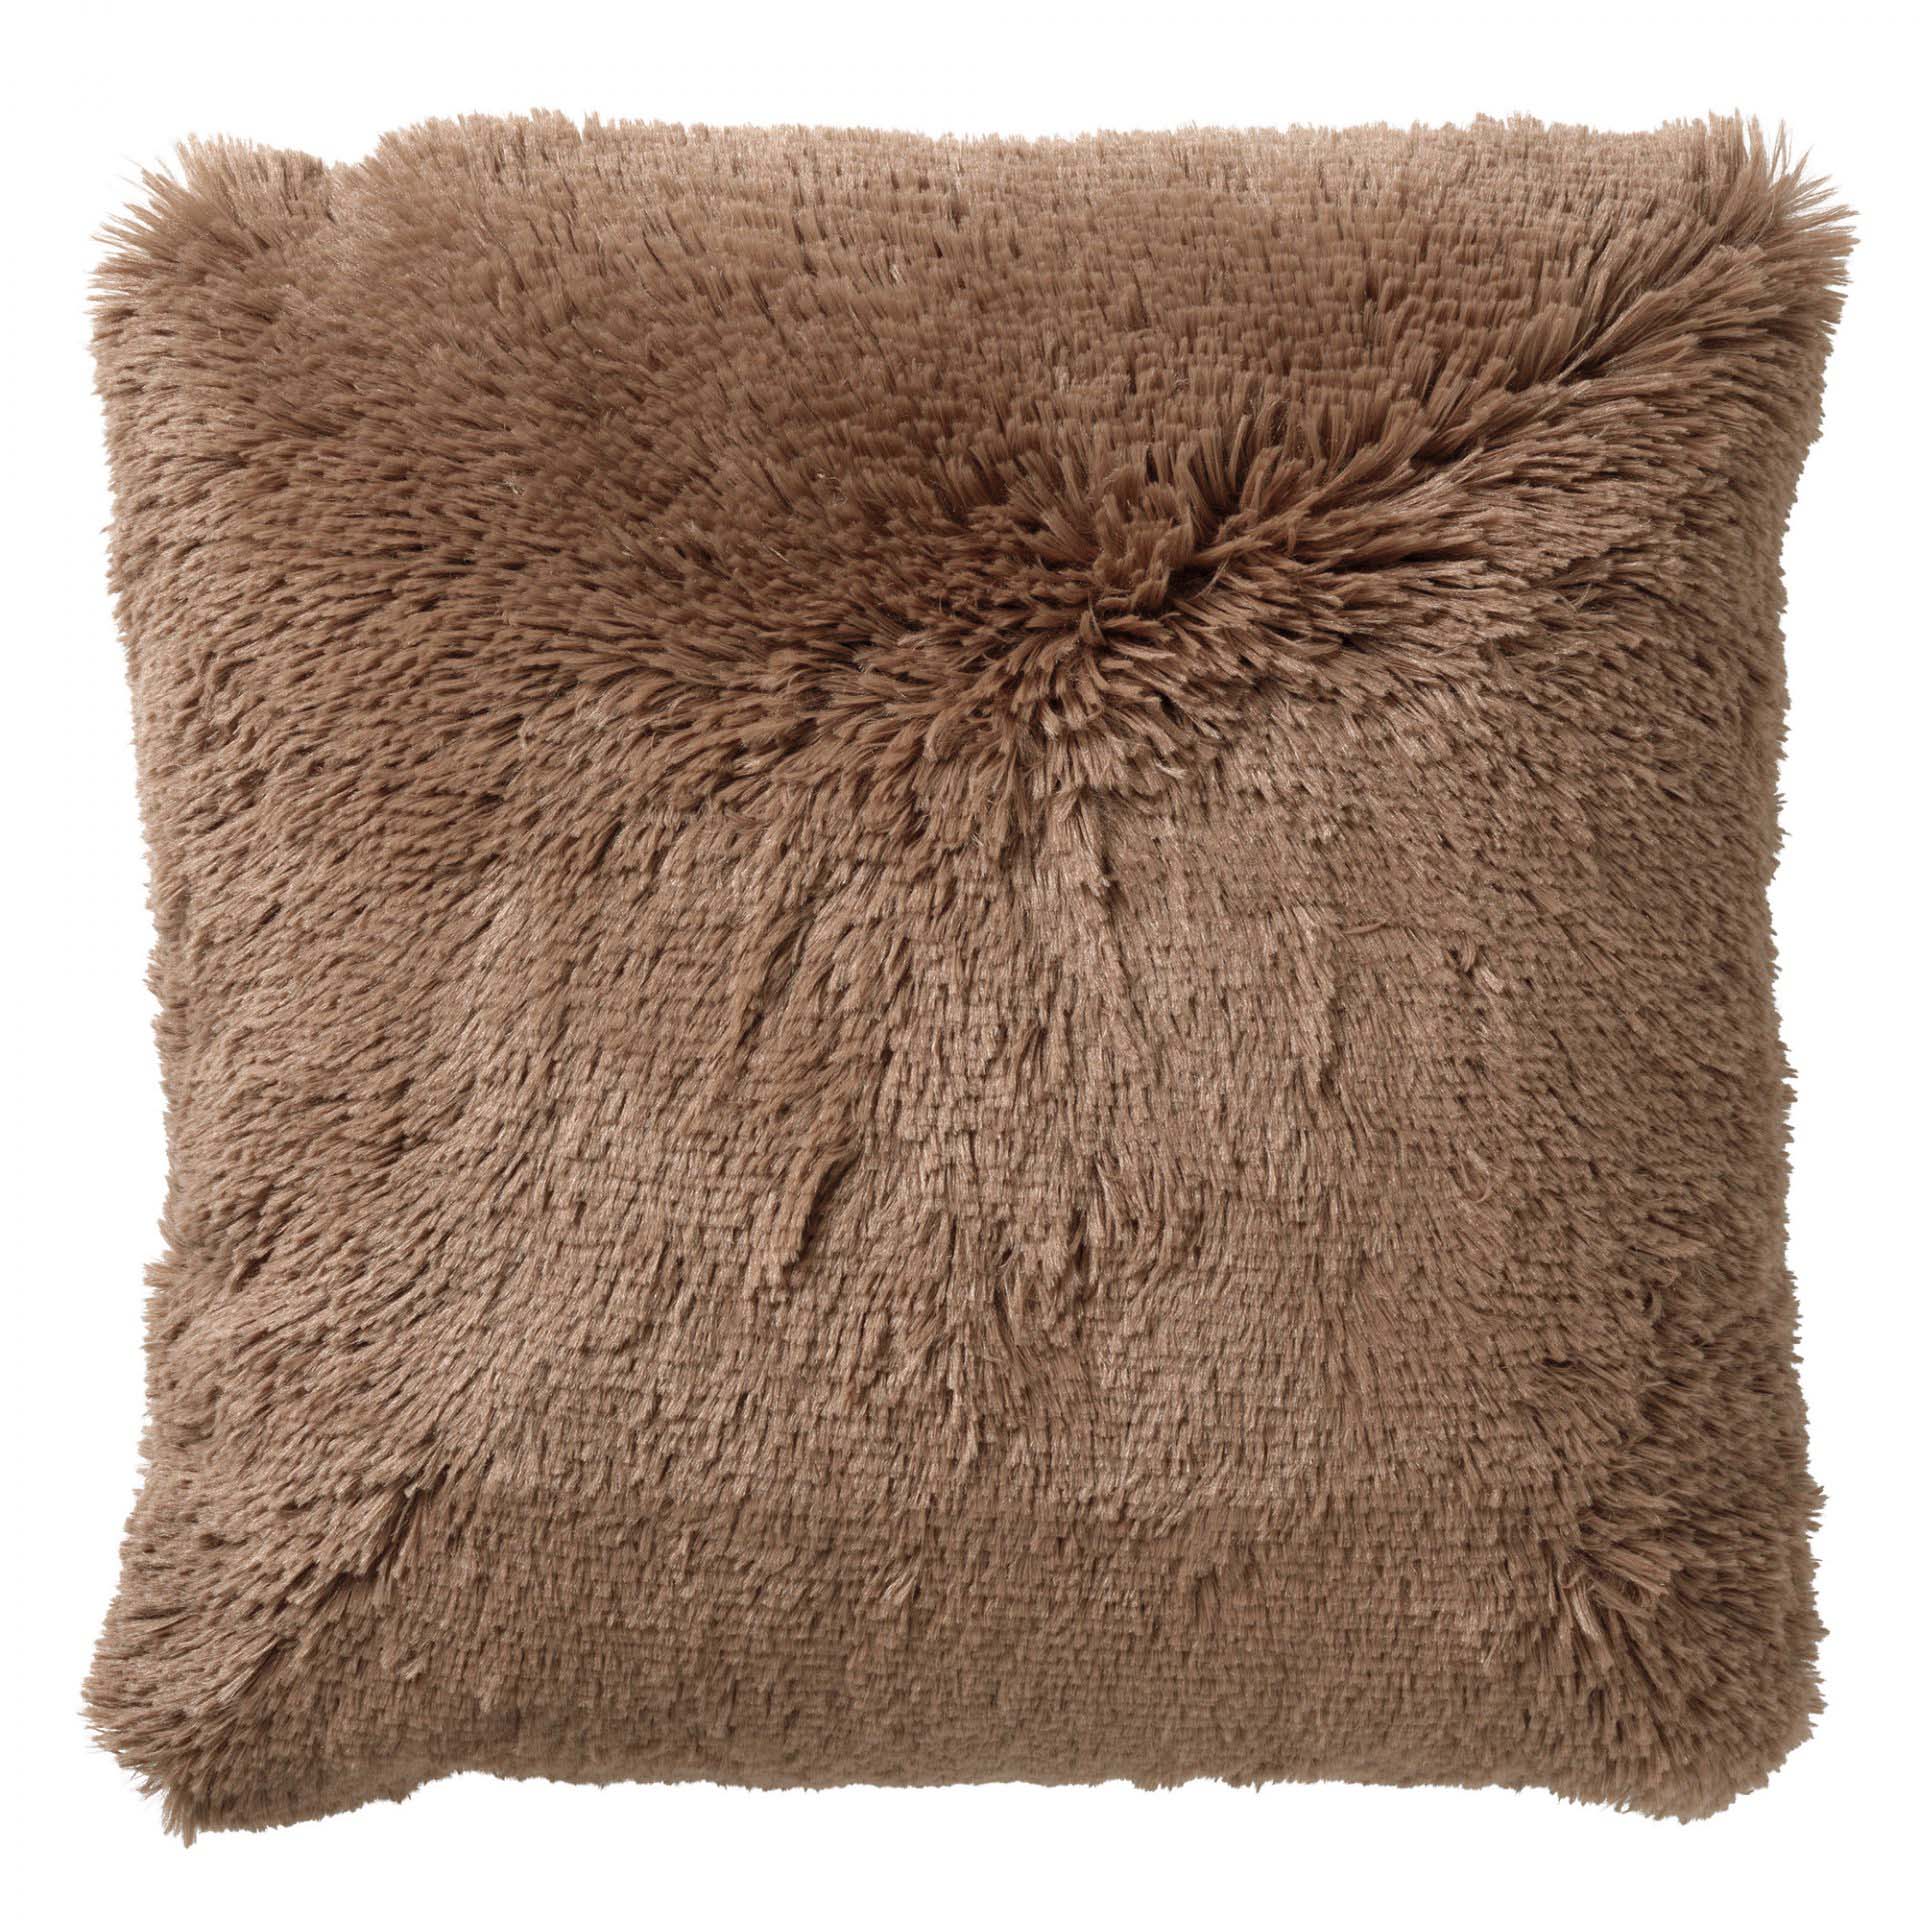 FLUFFY - Cushion 60x60 cm - Tobacco Brown - brown